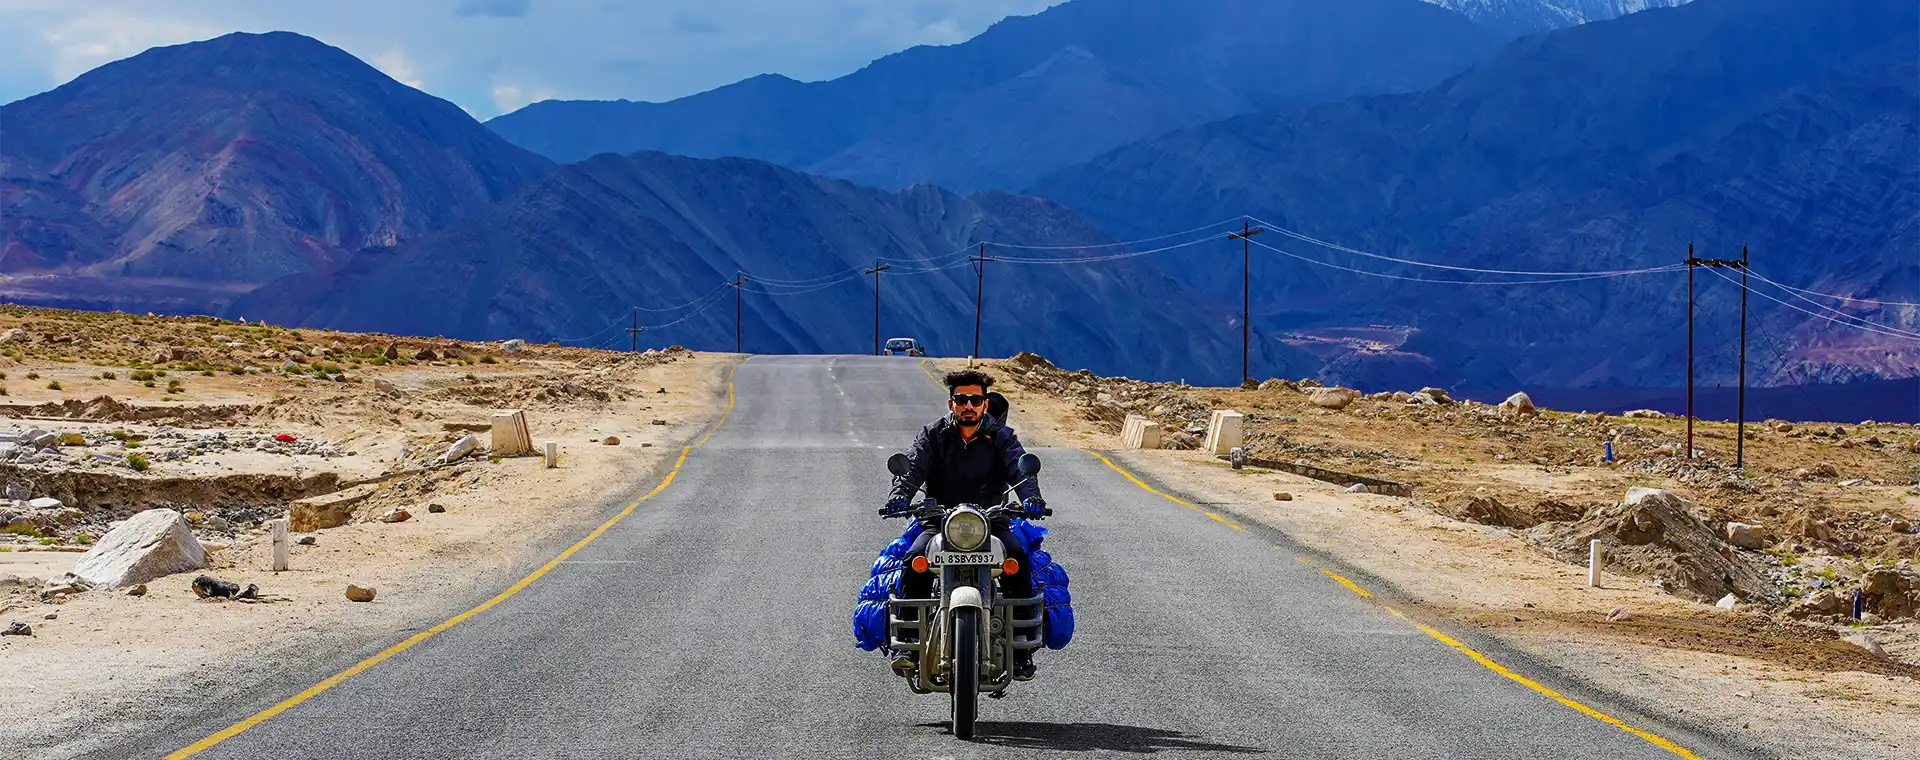 Tips for Safe & Enjoyable Leh Ladakh Bike Tour